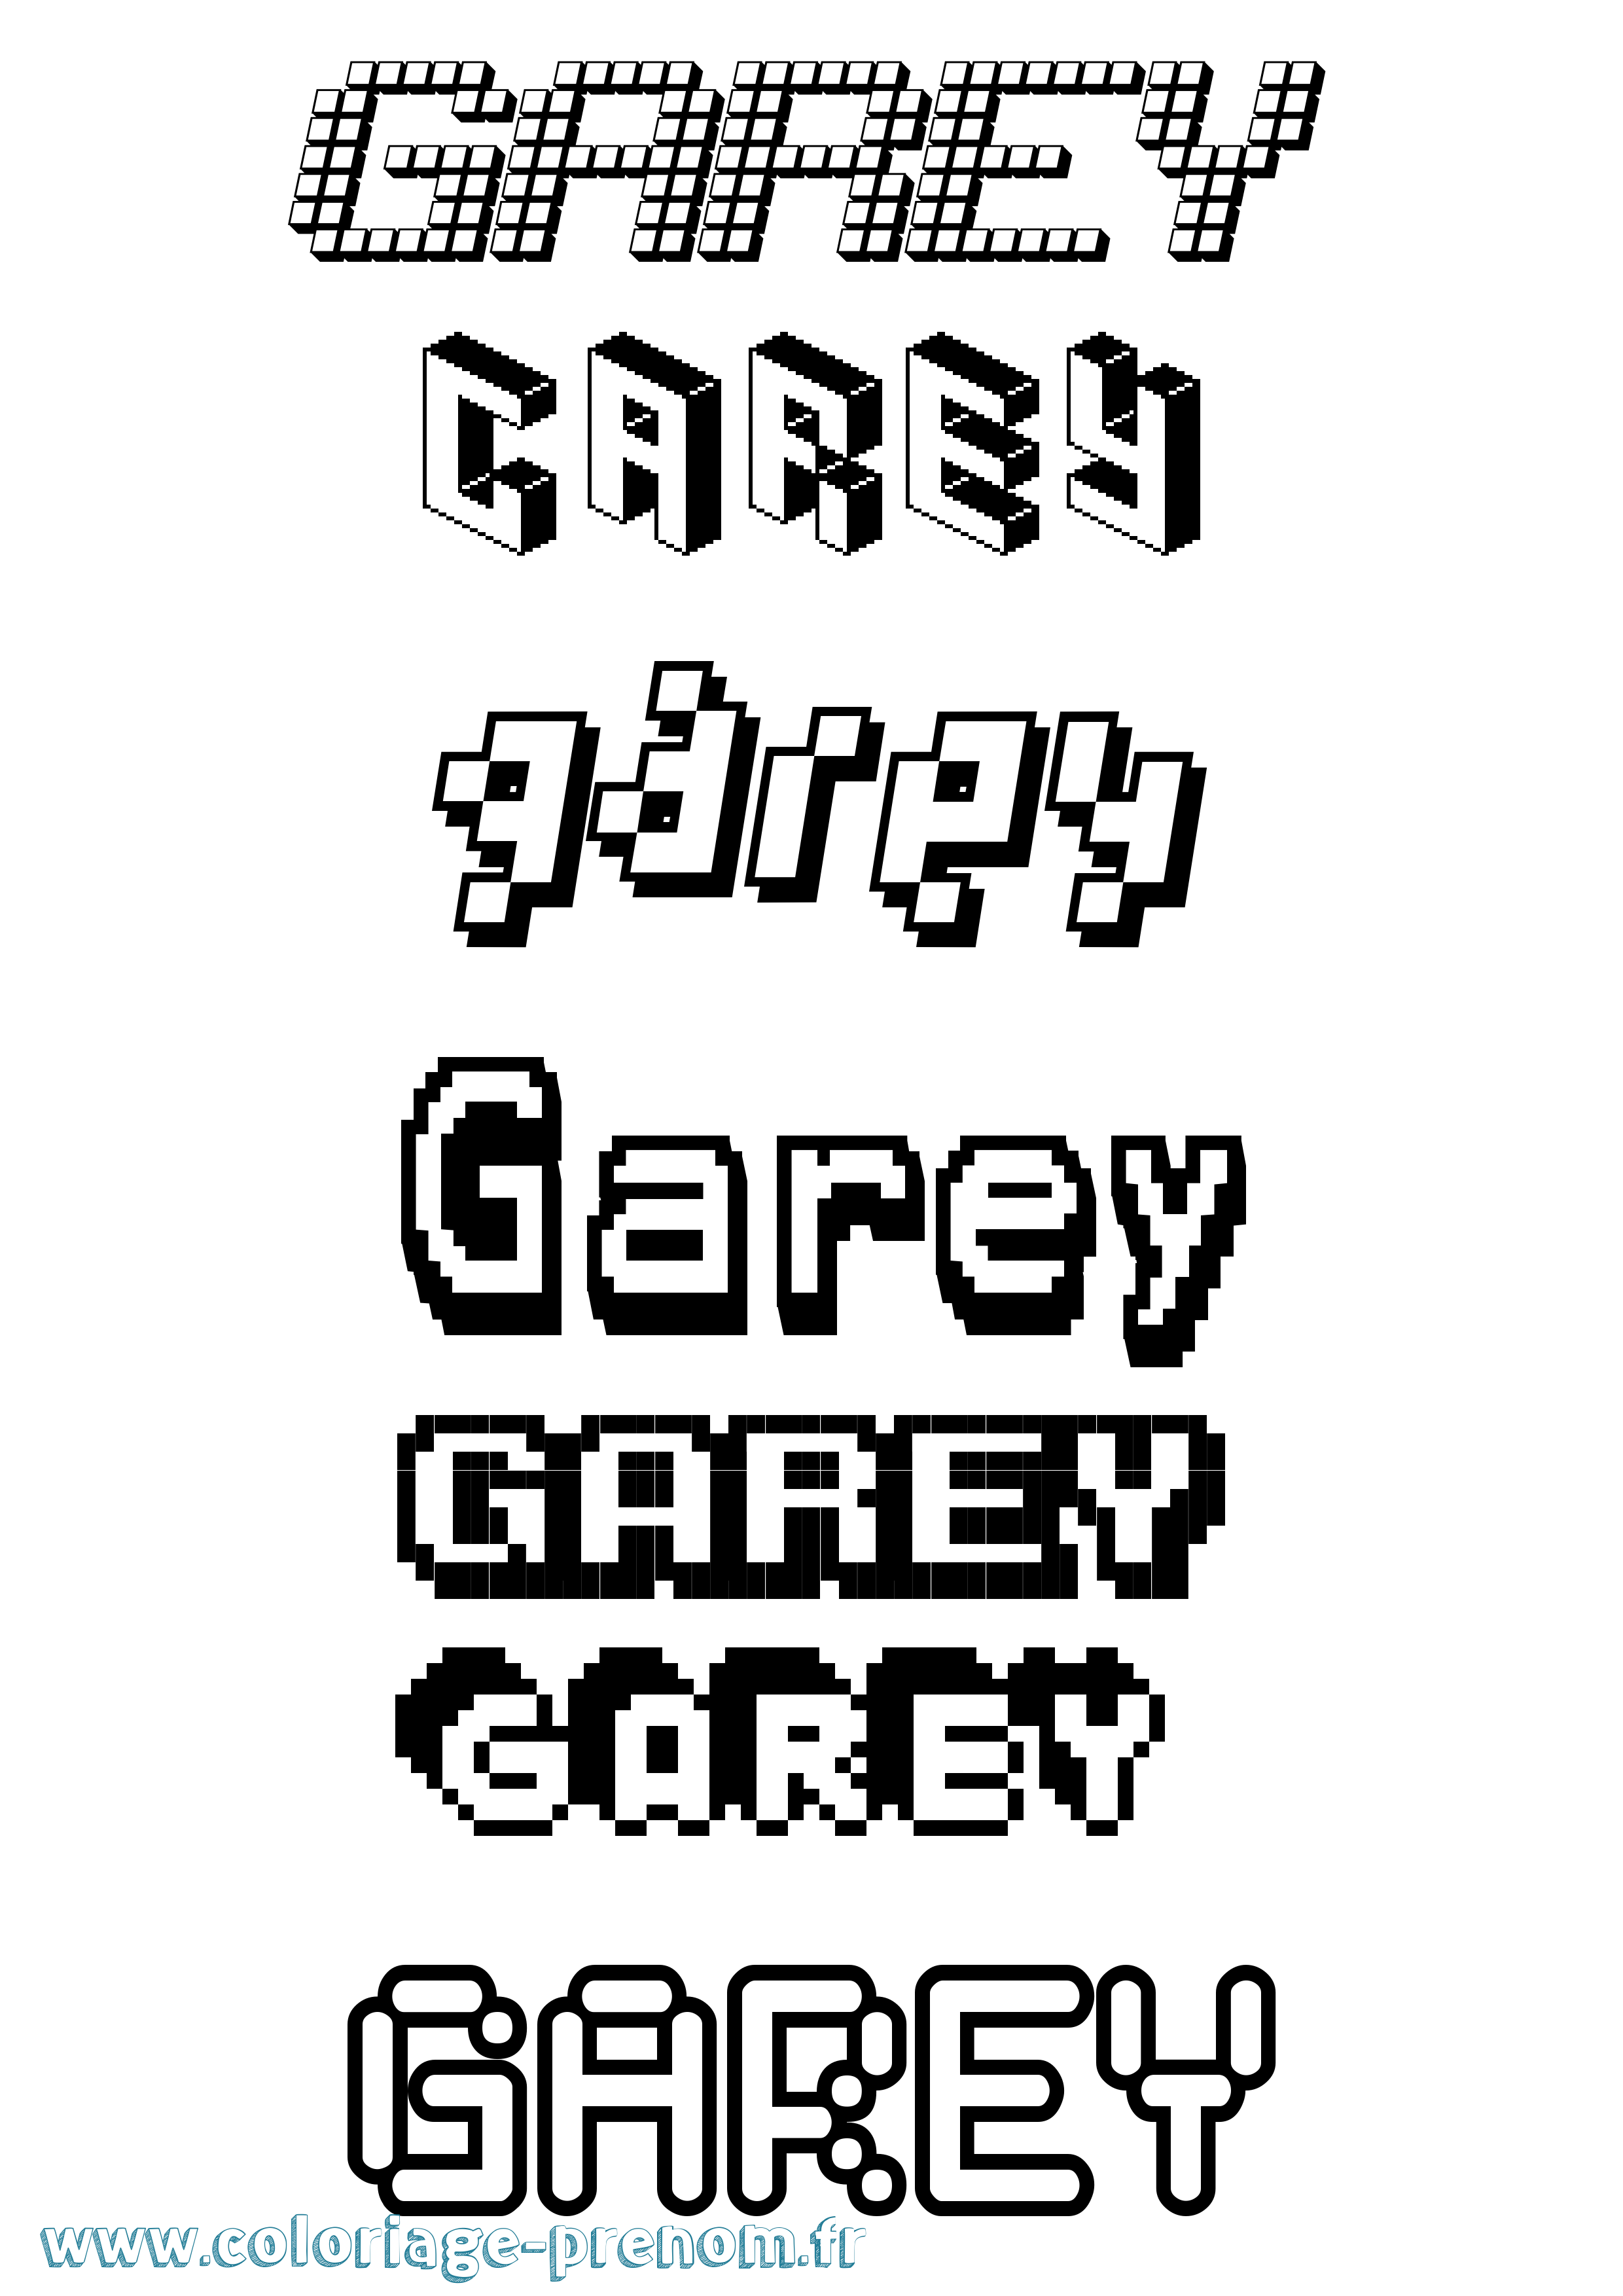 Coloriage prénom Garey Pixel